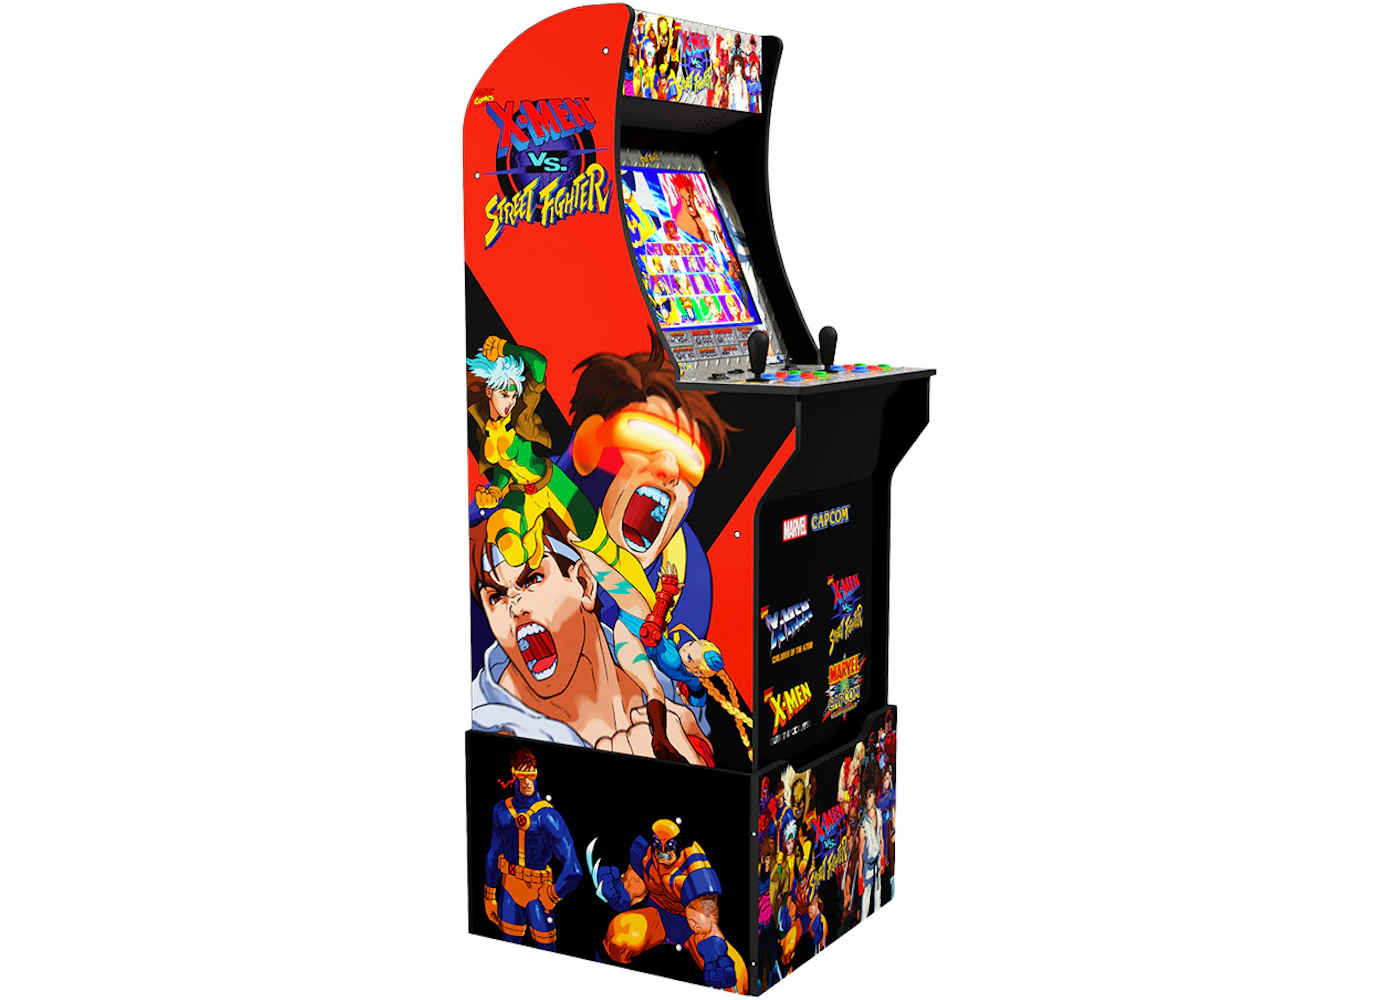 Arcade1up X Men Vs Street Fighter